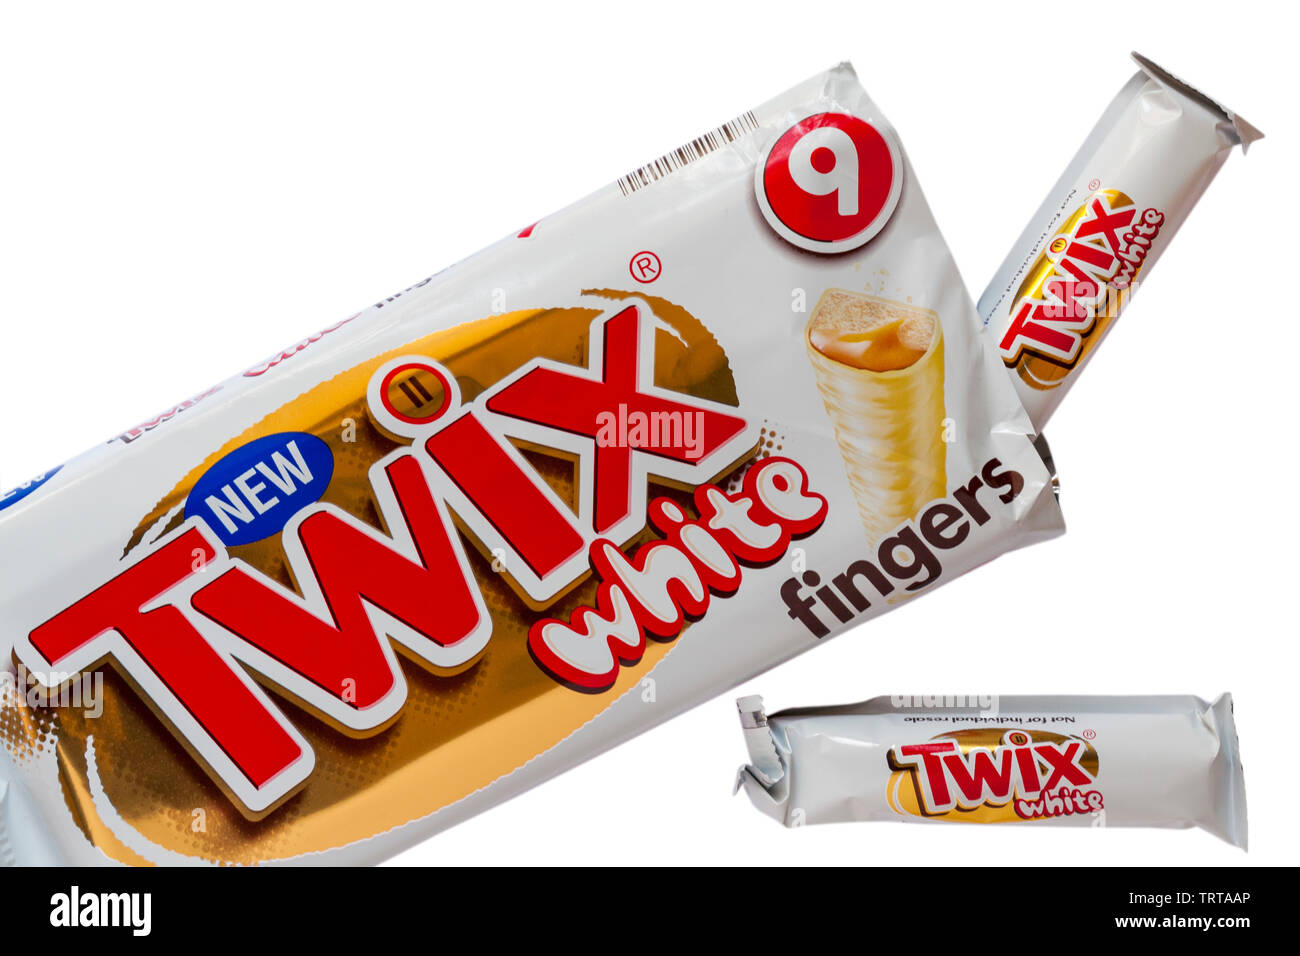 Paket der neuen Twix White Finger auf weißem Hintergrund - weiße  Schokolade, Karamell und Keks - einzeln verpackt Stockfotografie - Alamy